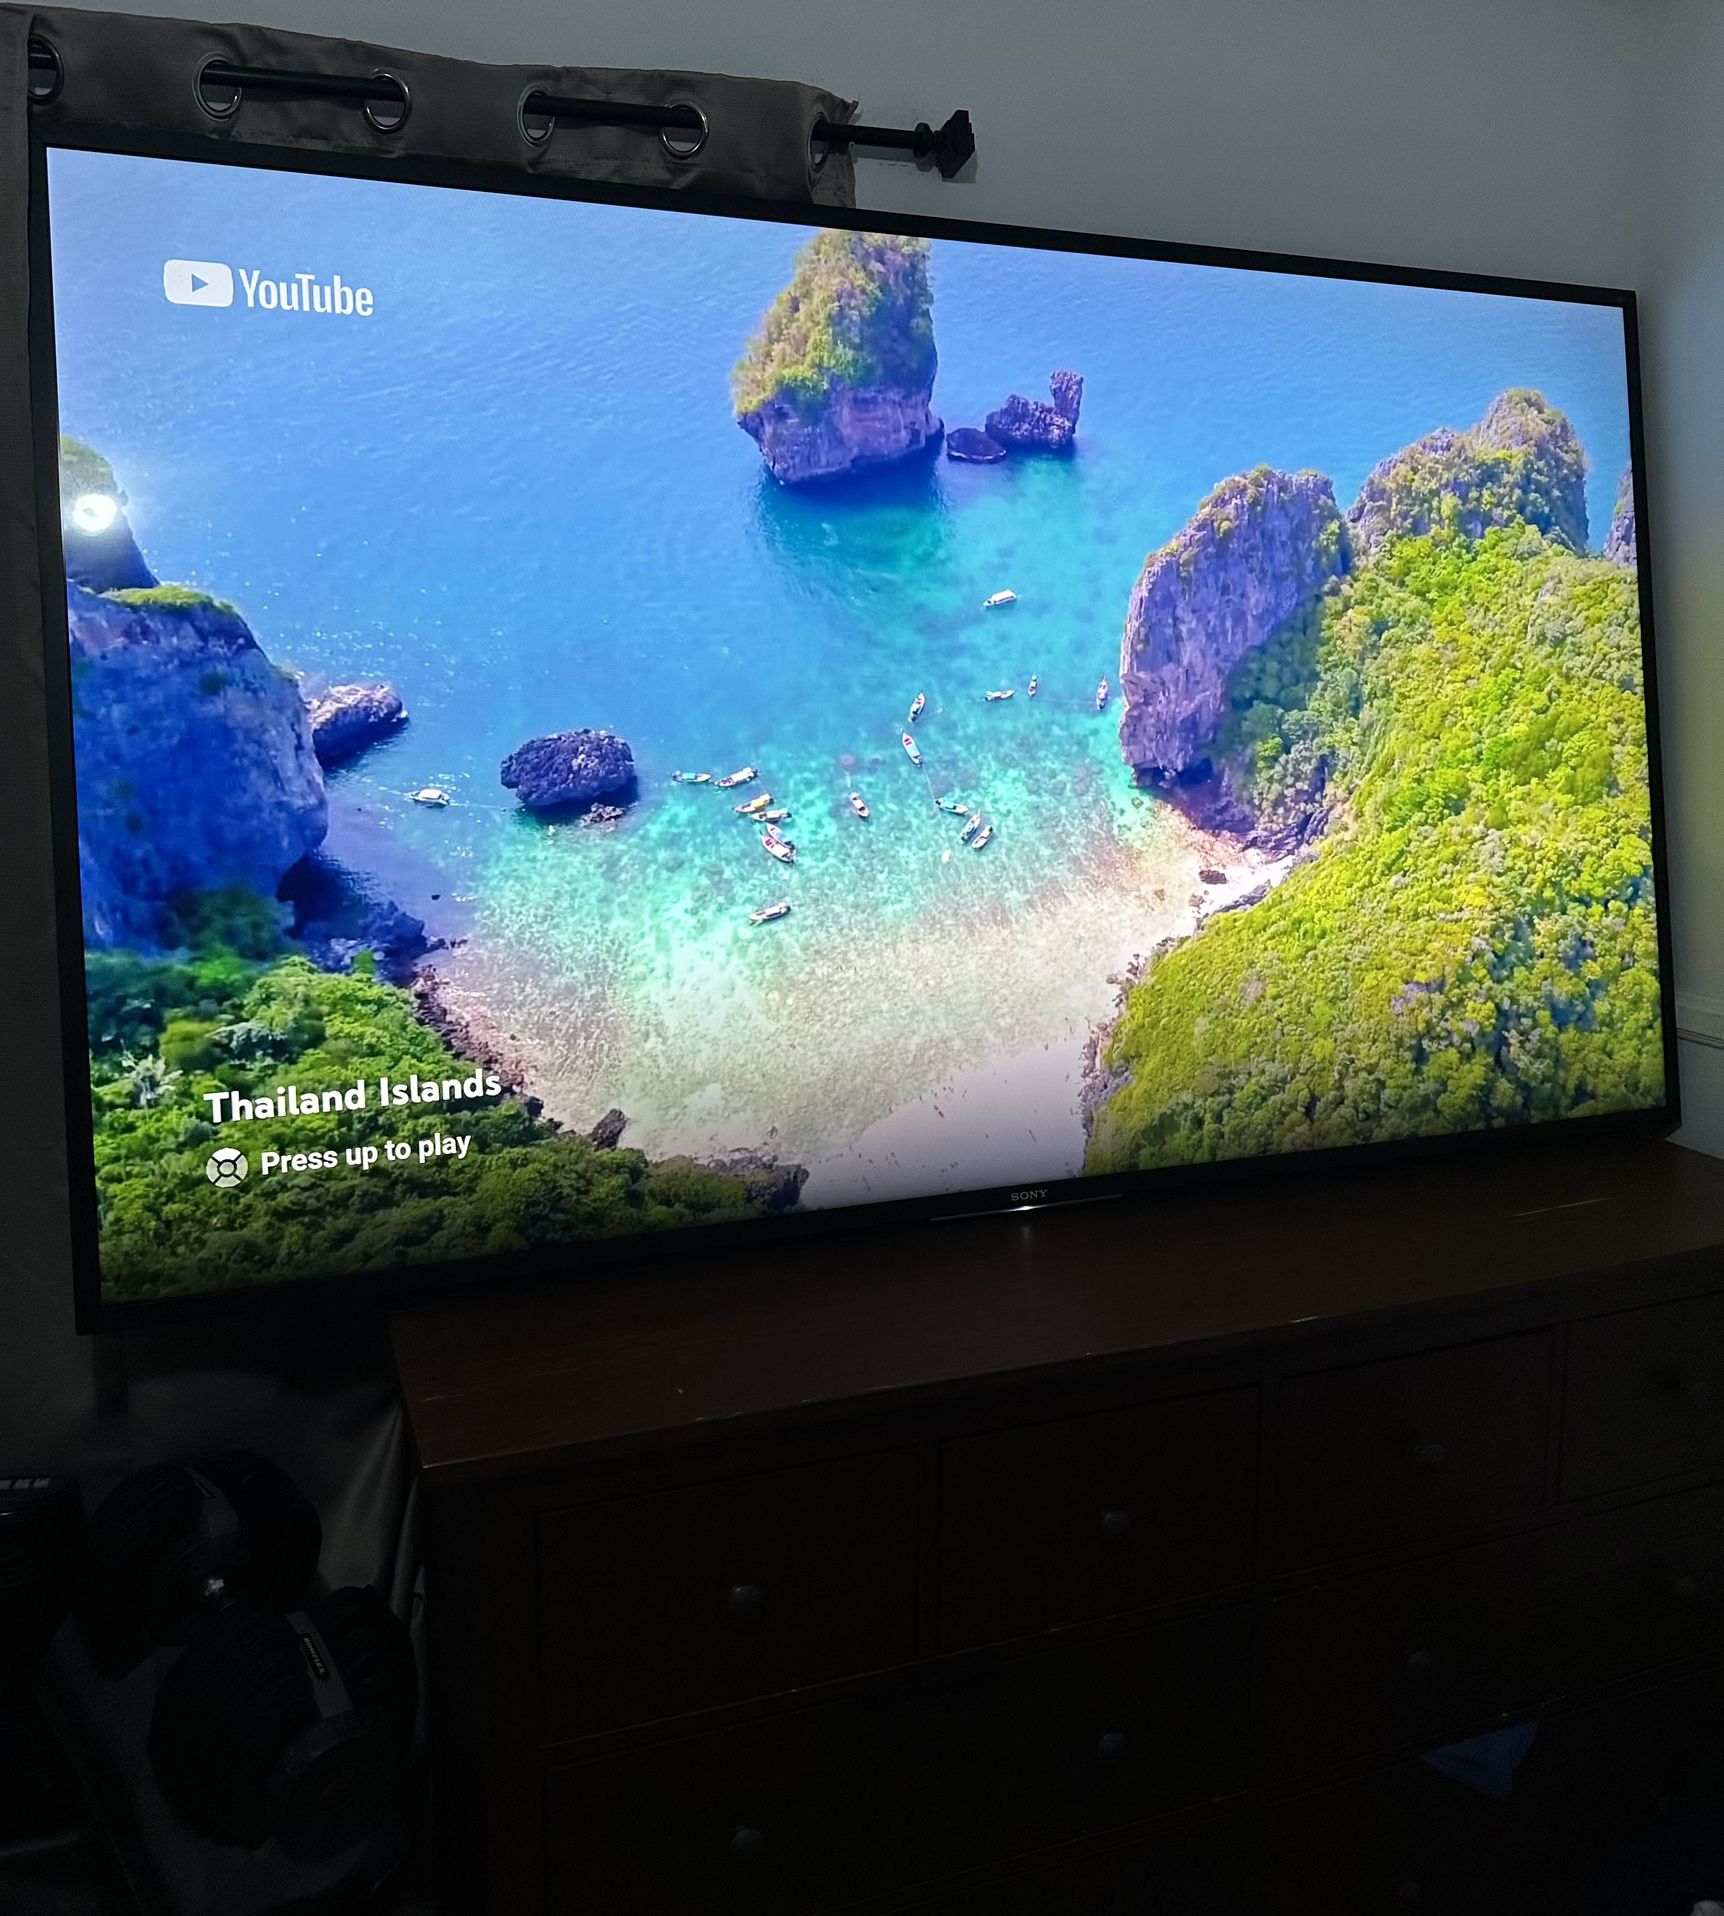 SMART TV “SONY” DE 85” Inches EN PERFECTAS CONDICIONES SOLO $600